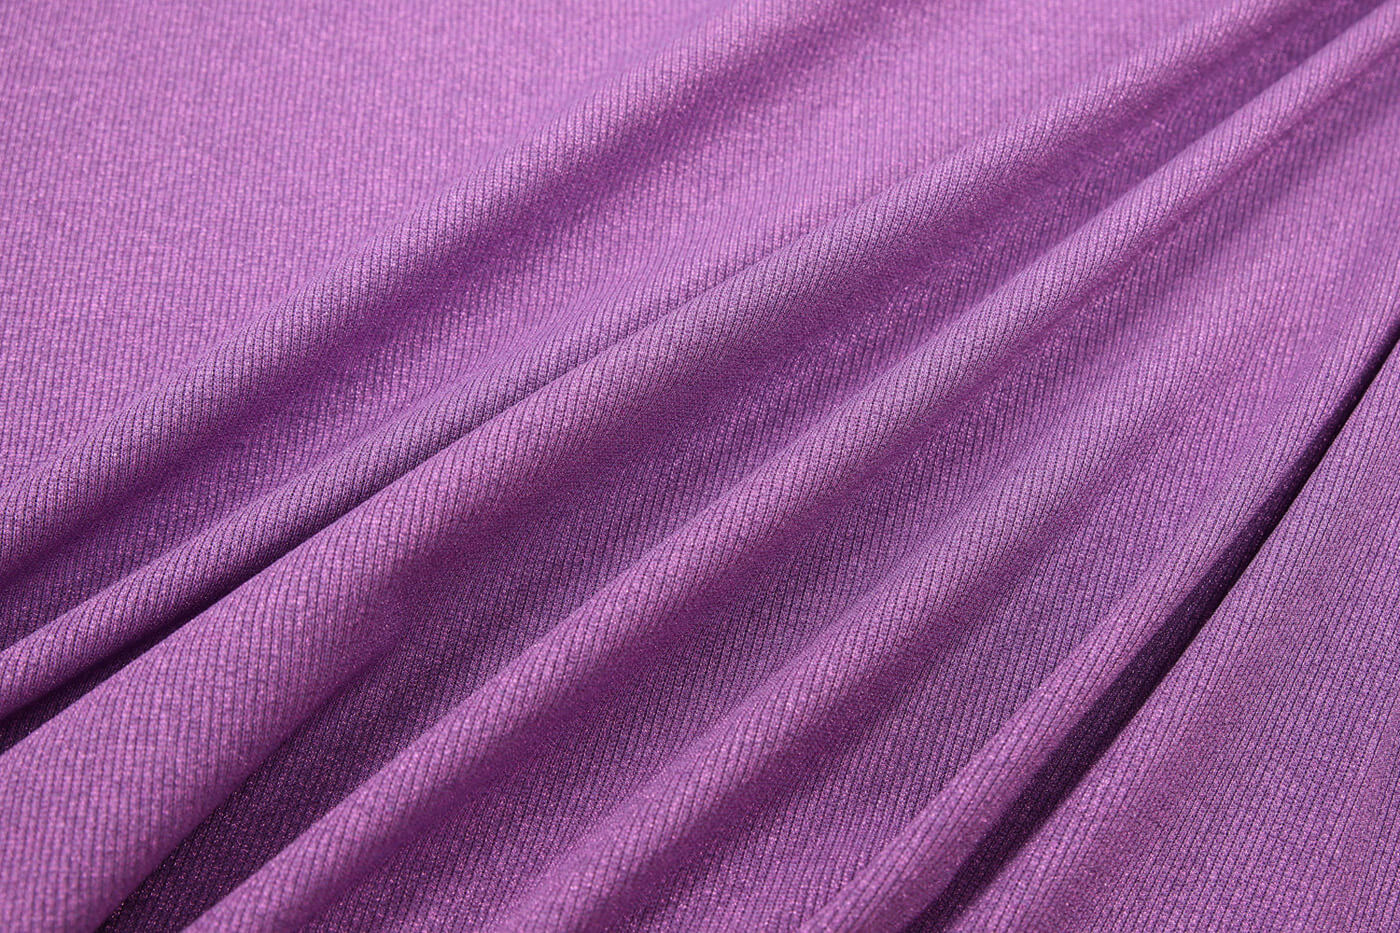 Трикотаж резинка с люрексом Etro, цвет Фиолетовый, фото 1